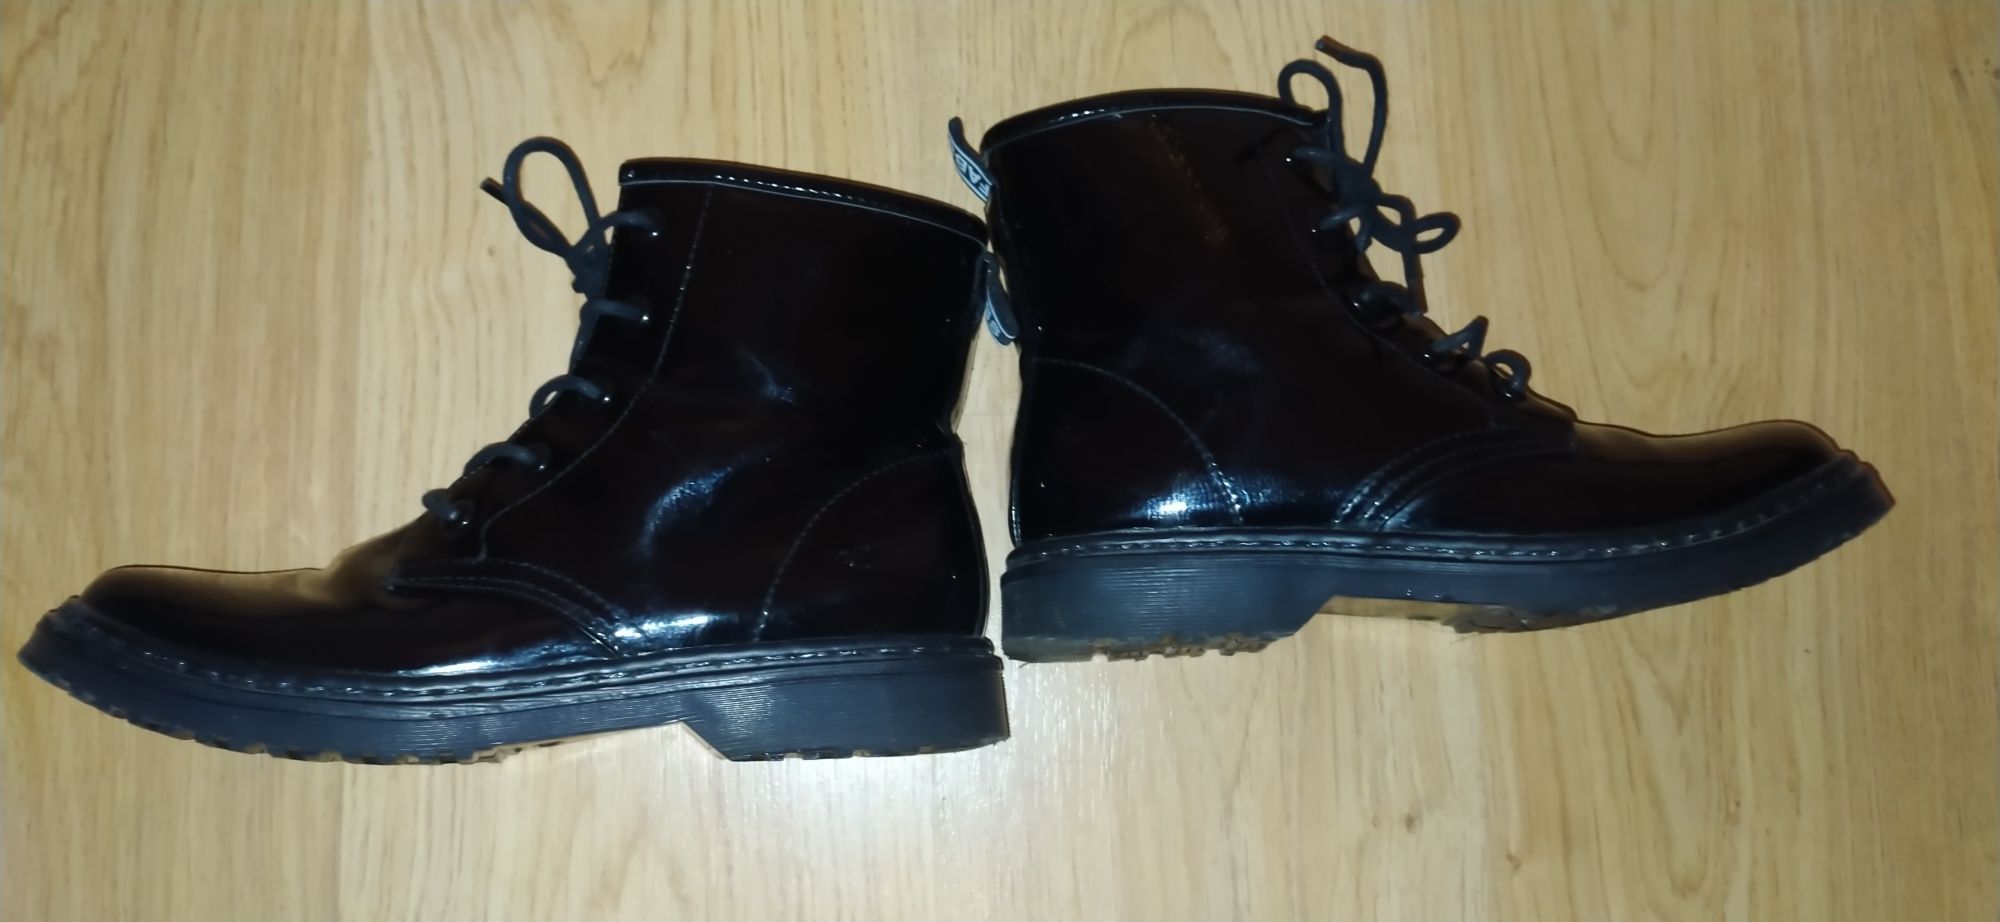 Лаковые ботинки Fabs р 41 ст 27 см